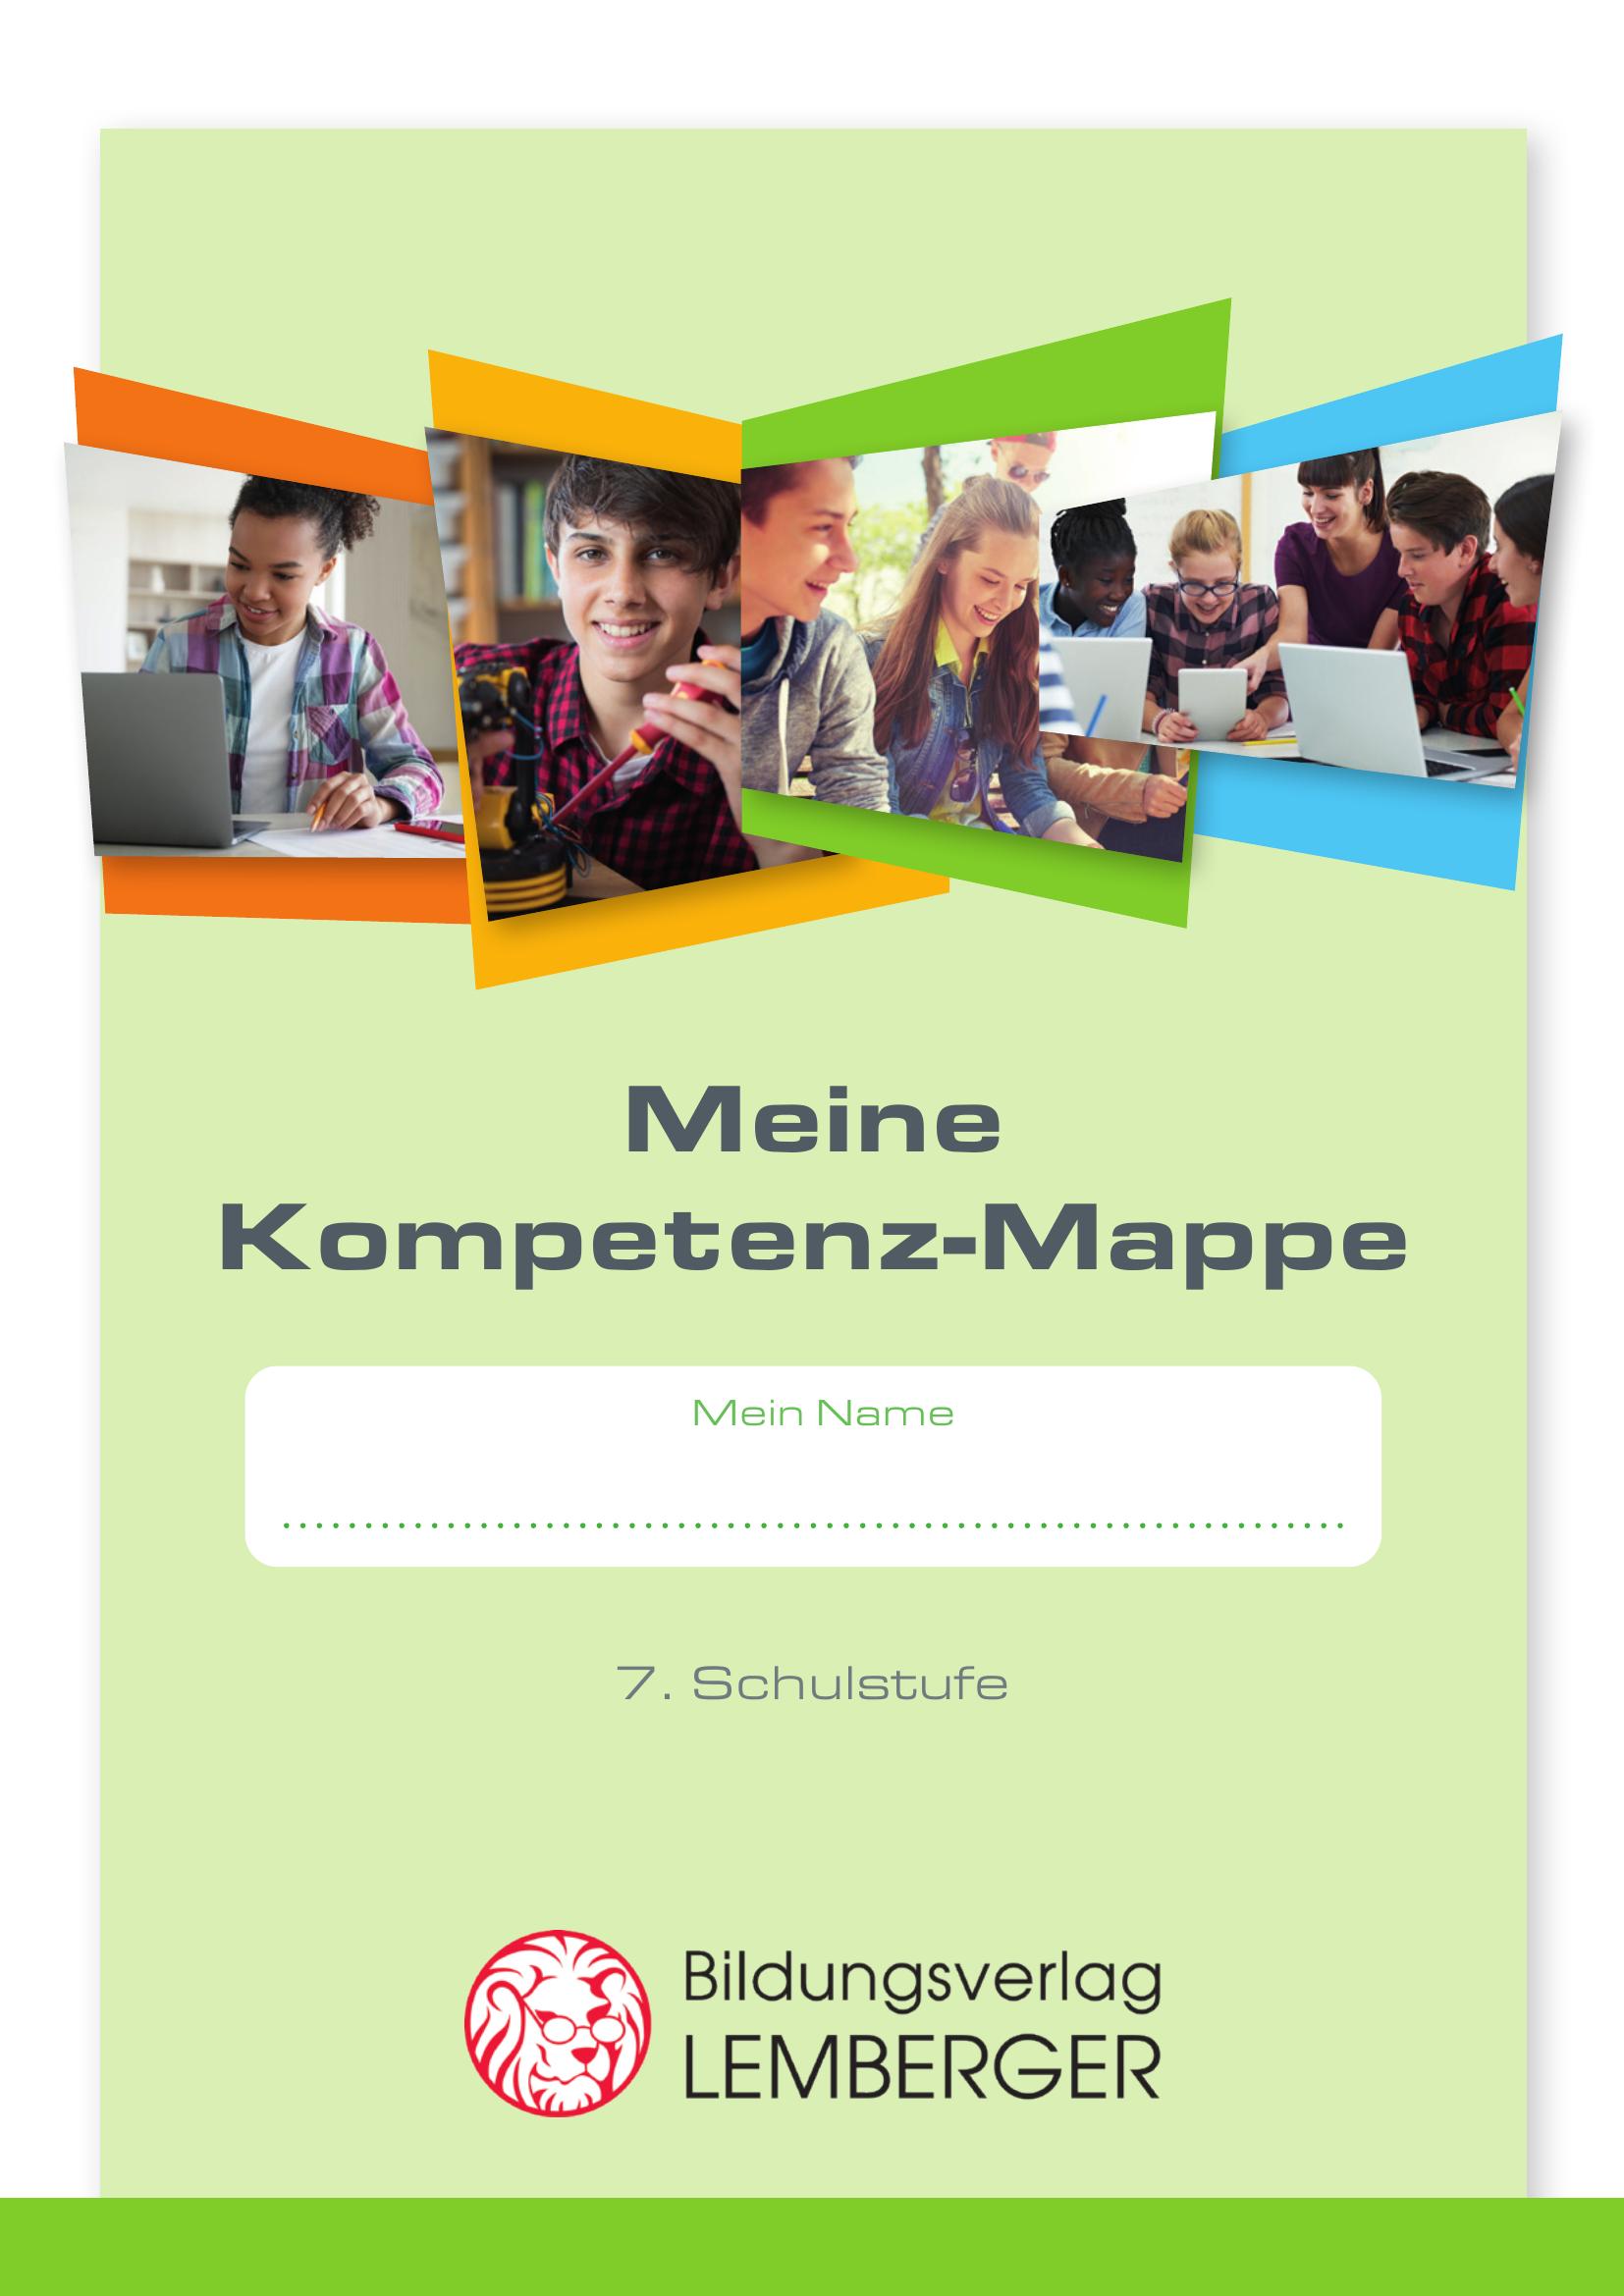 Kompetenz Lernen® - future training - Meine Kompetenz-Mappe 3. Klasse